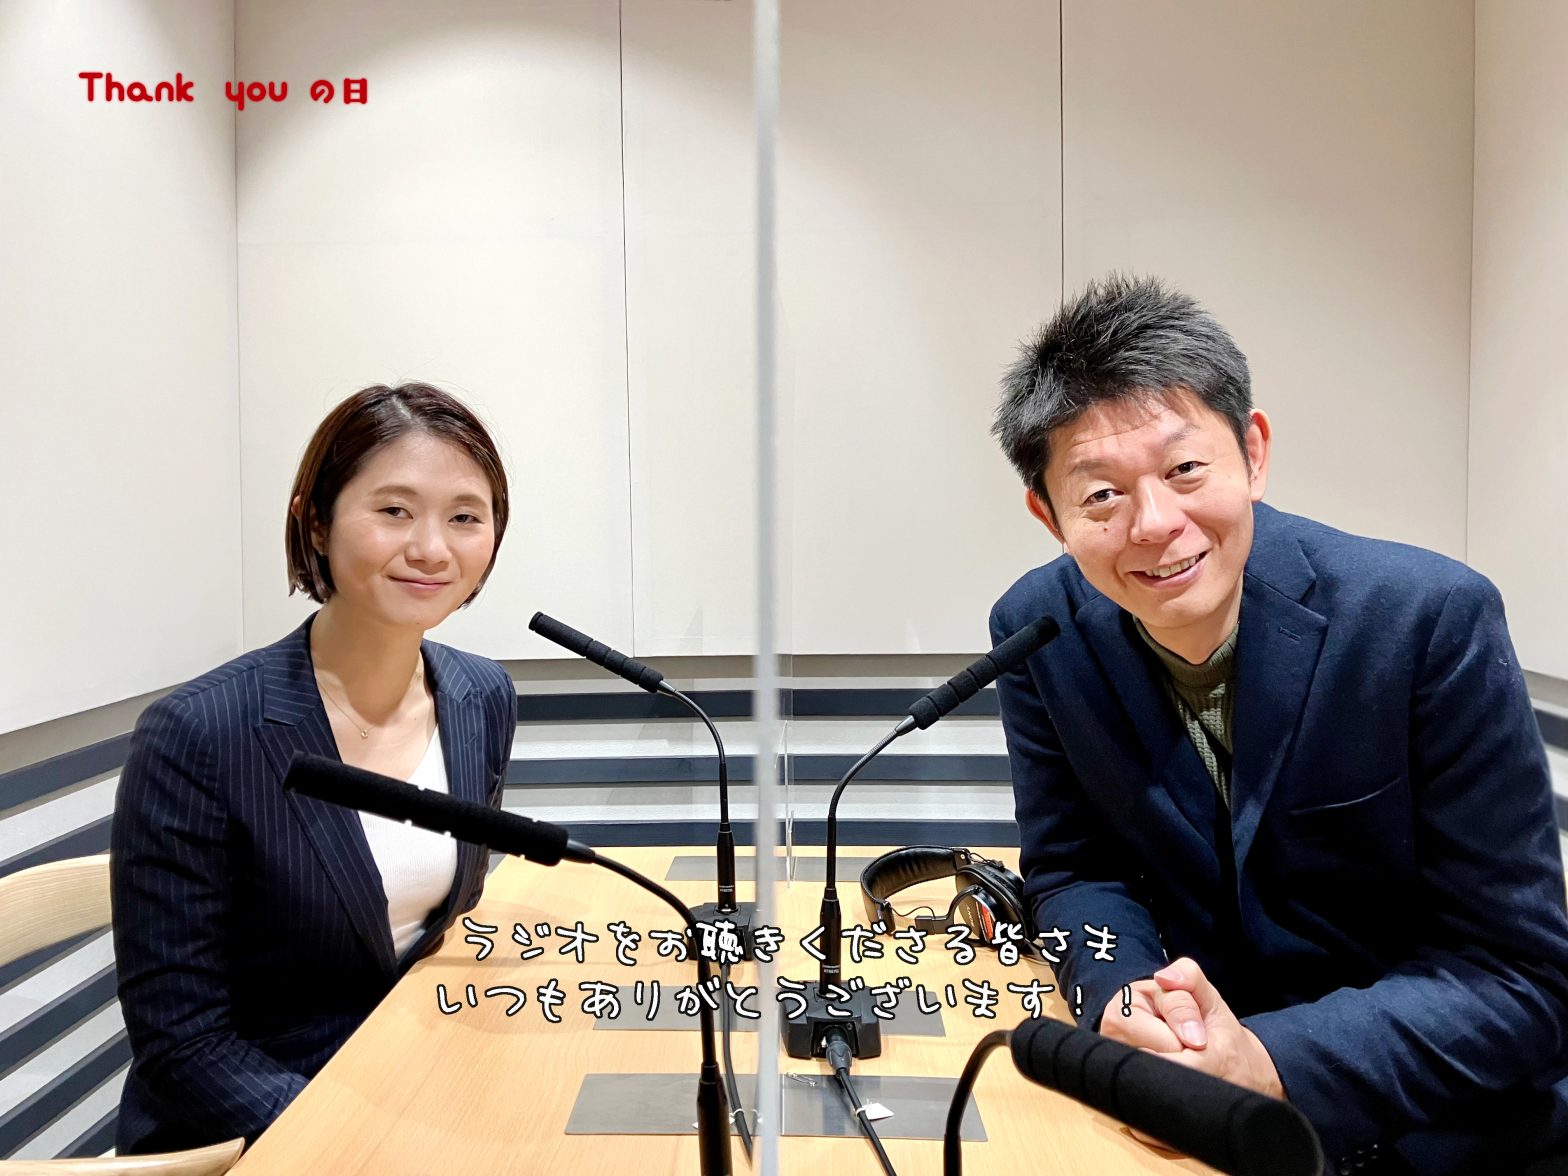 ラジオリスナーに感謝する島田秀平さんと古藤由佳弁護士